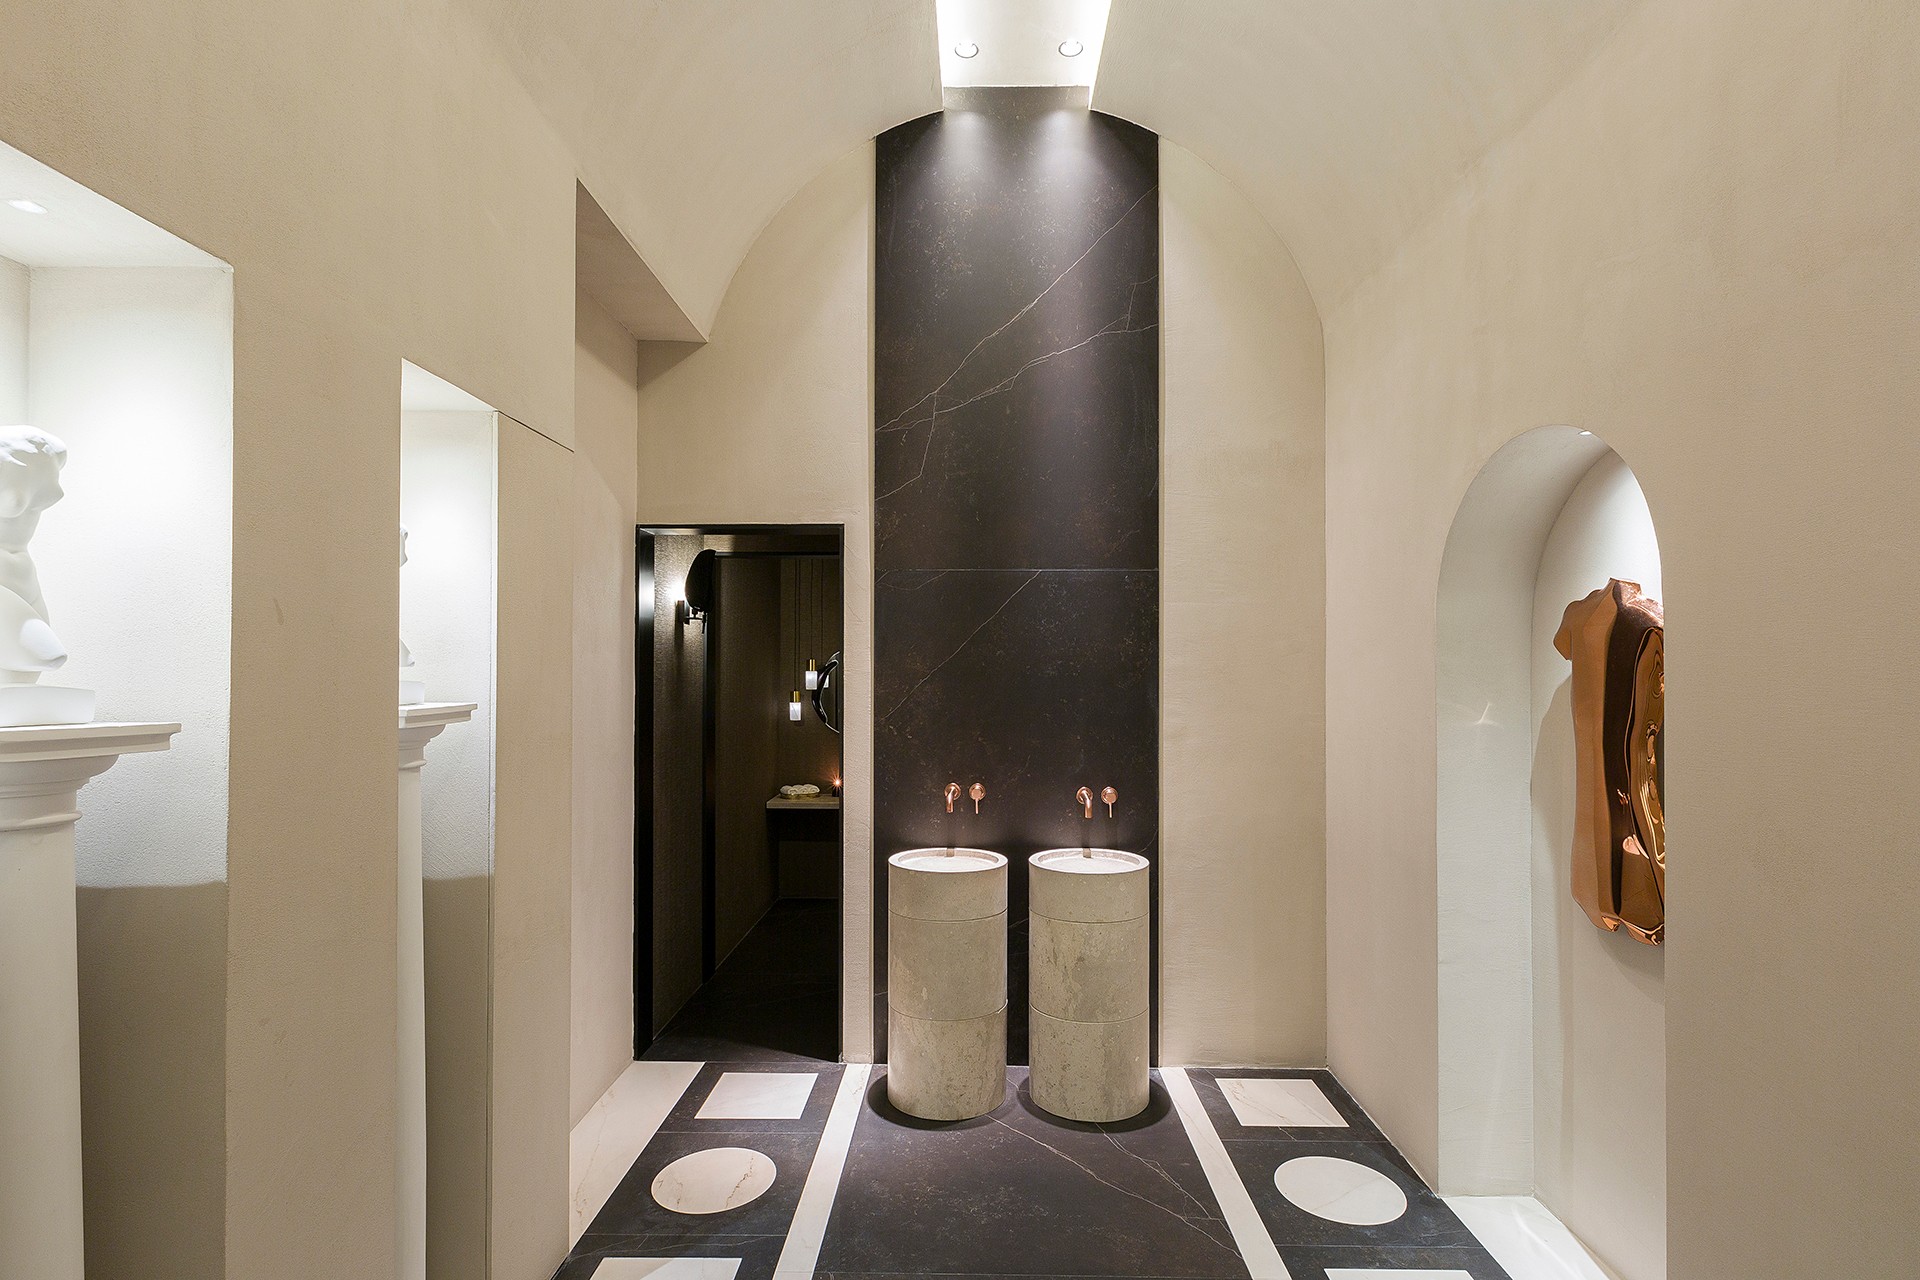 Image of 56. casa decor 2022 espacio somos2studio aseos uso publico bajas 05 1 in A contemporary public toilet design inspired by Roman public baths - Cosentino